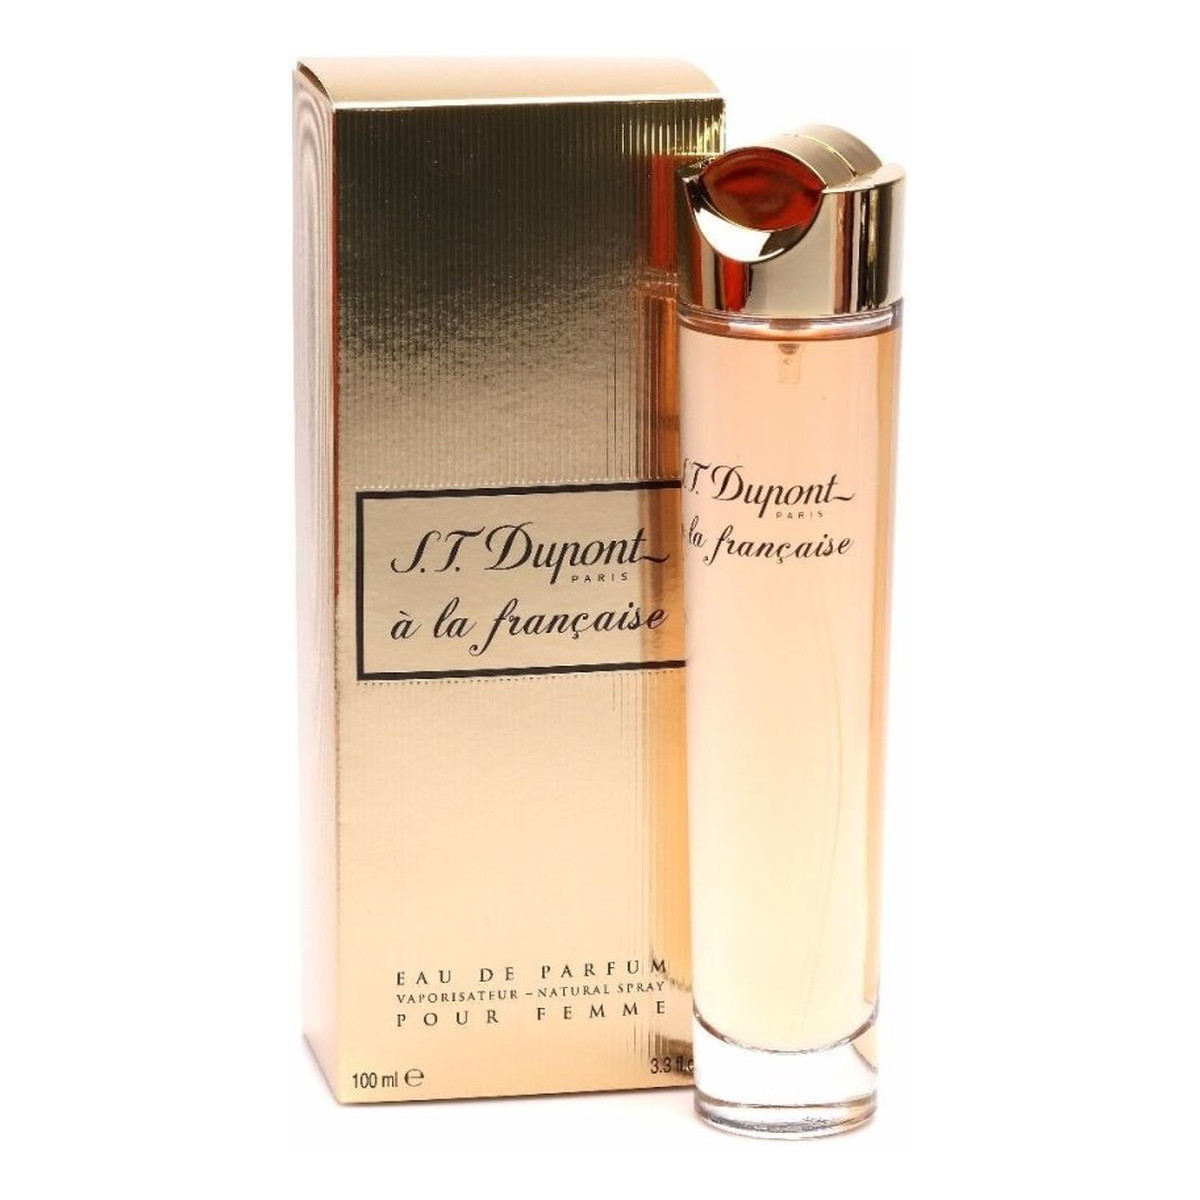 S. T. Dupont A La Francaise Pour Femme woda perfumowana 100ml